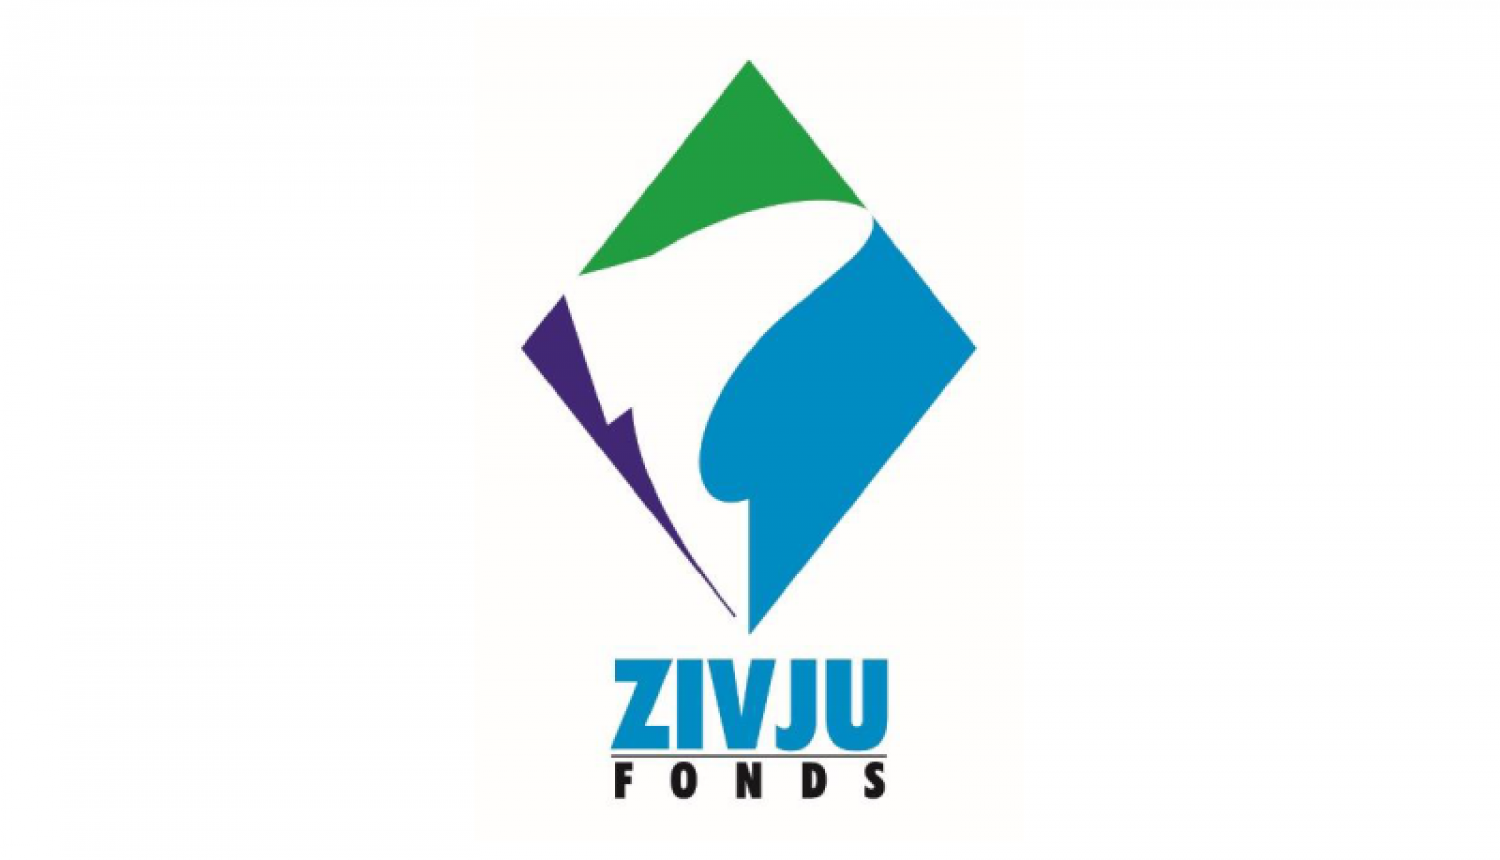 Zivju fonds logo